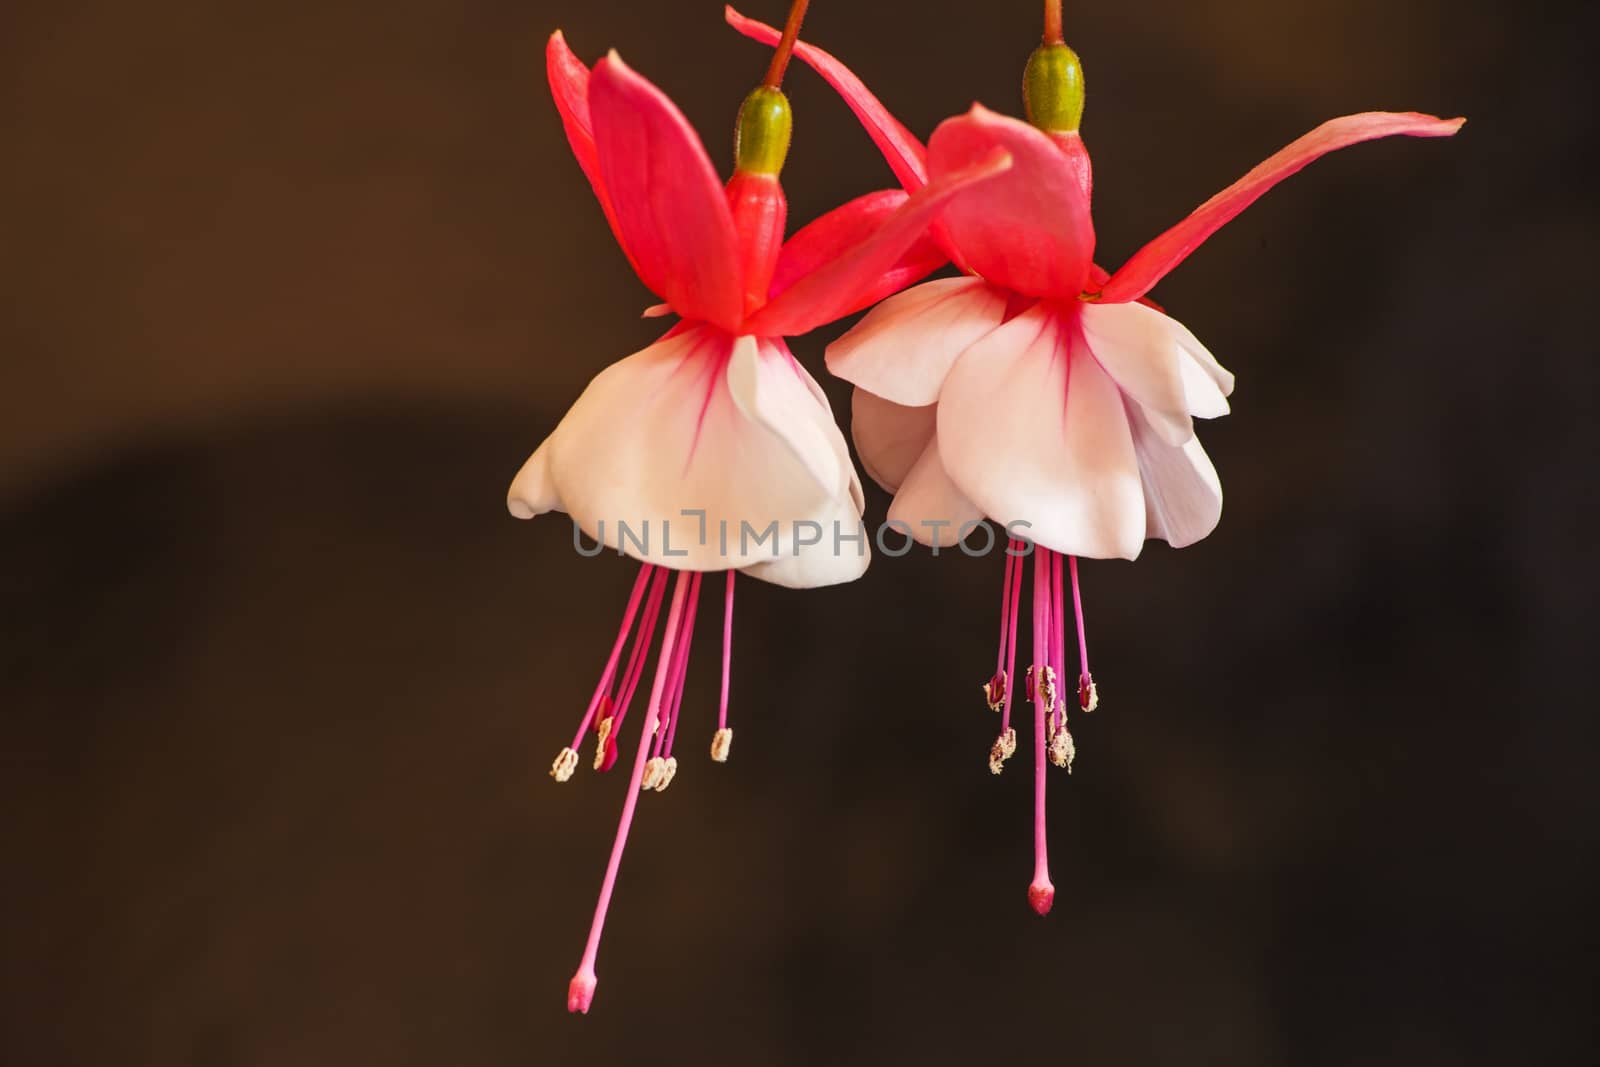 Fuchsia Flowers 2 by kobus_peche